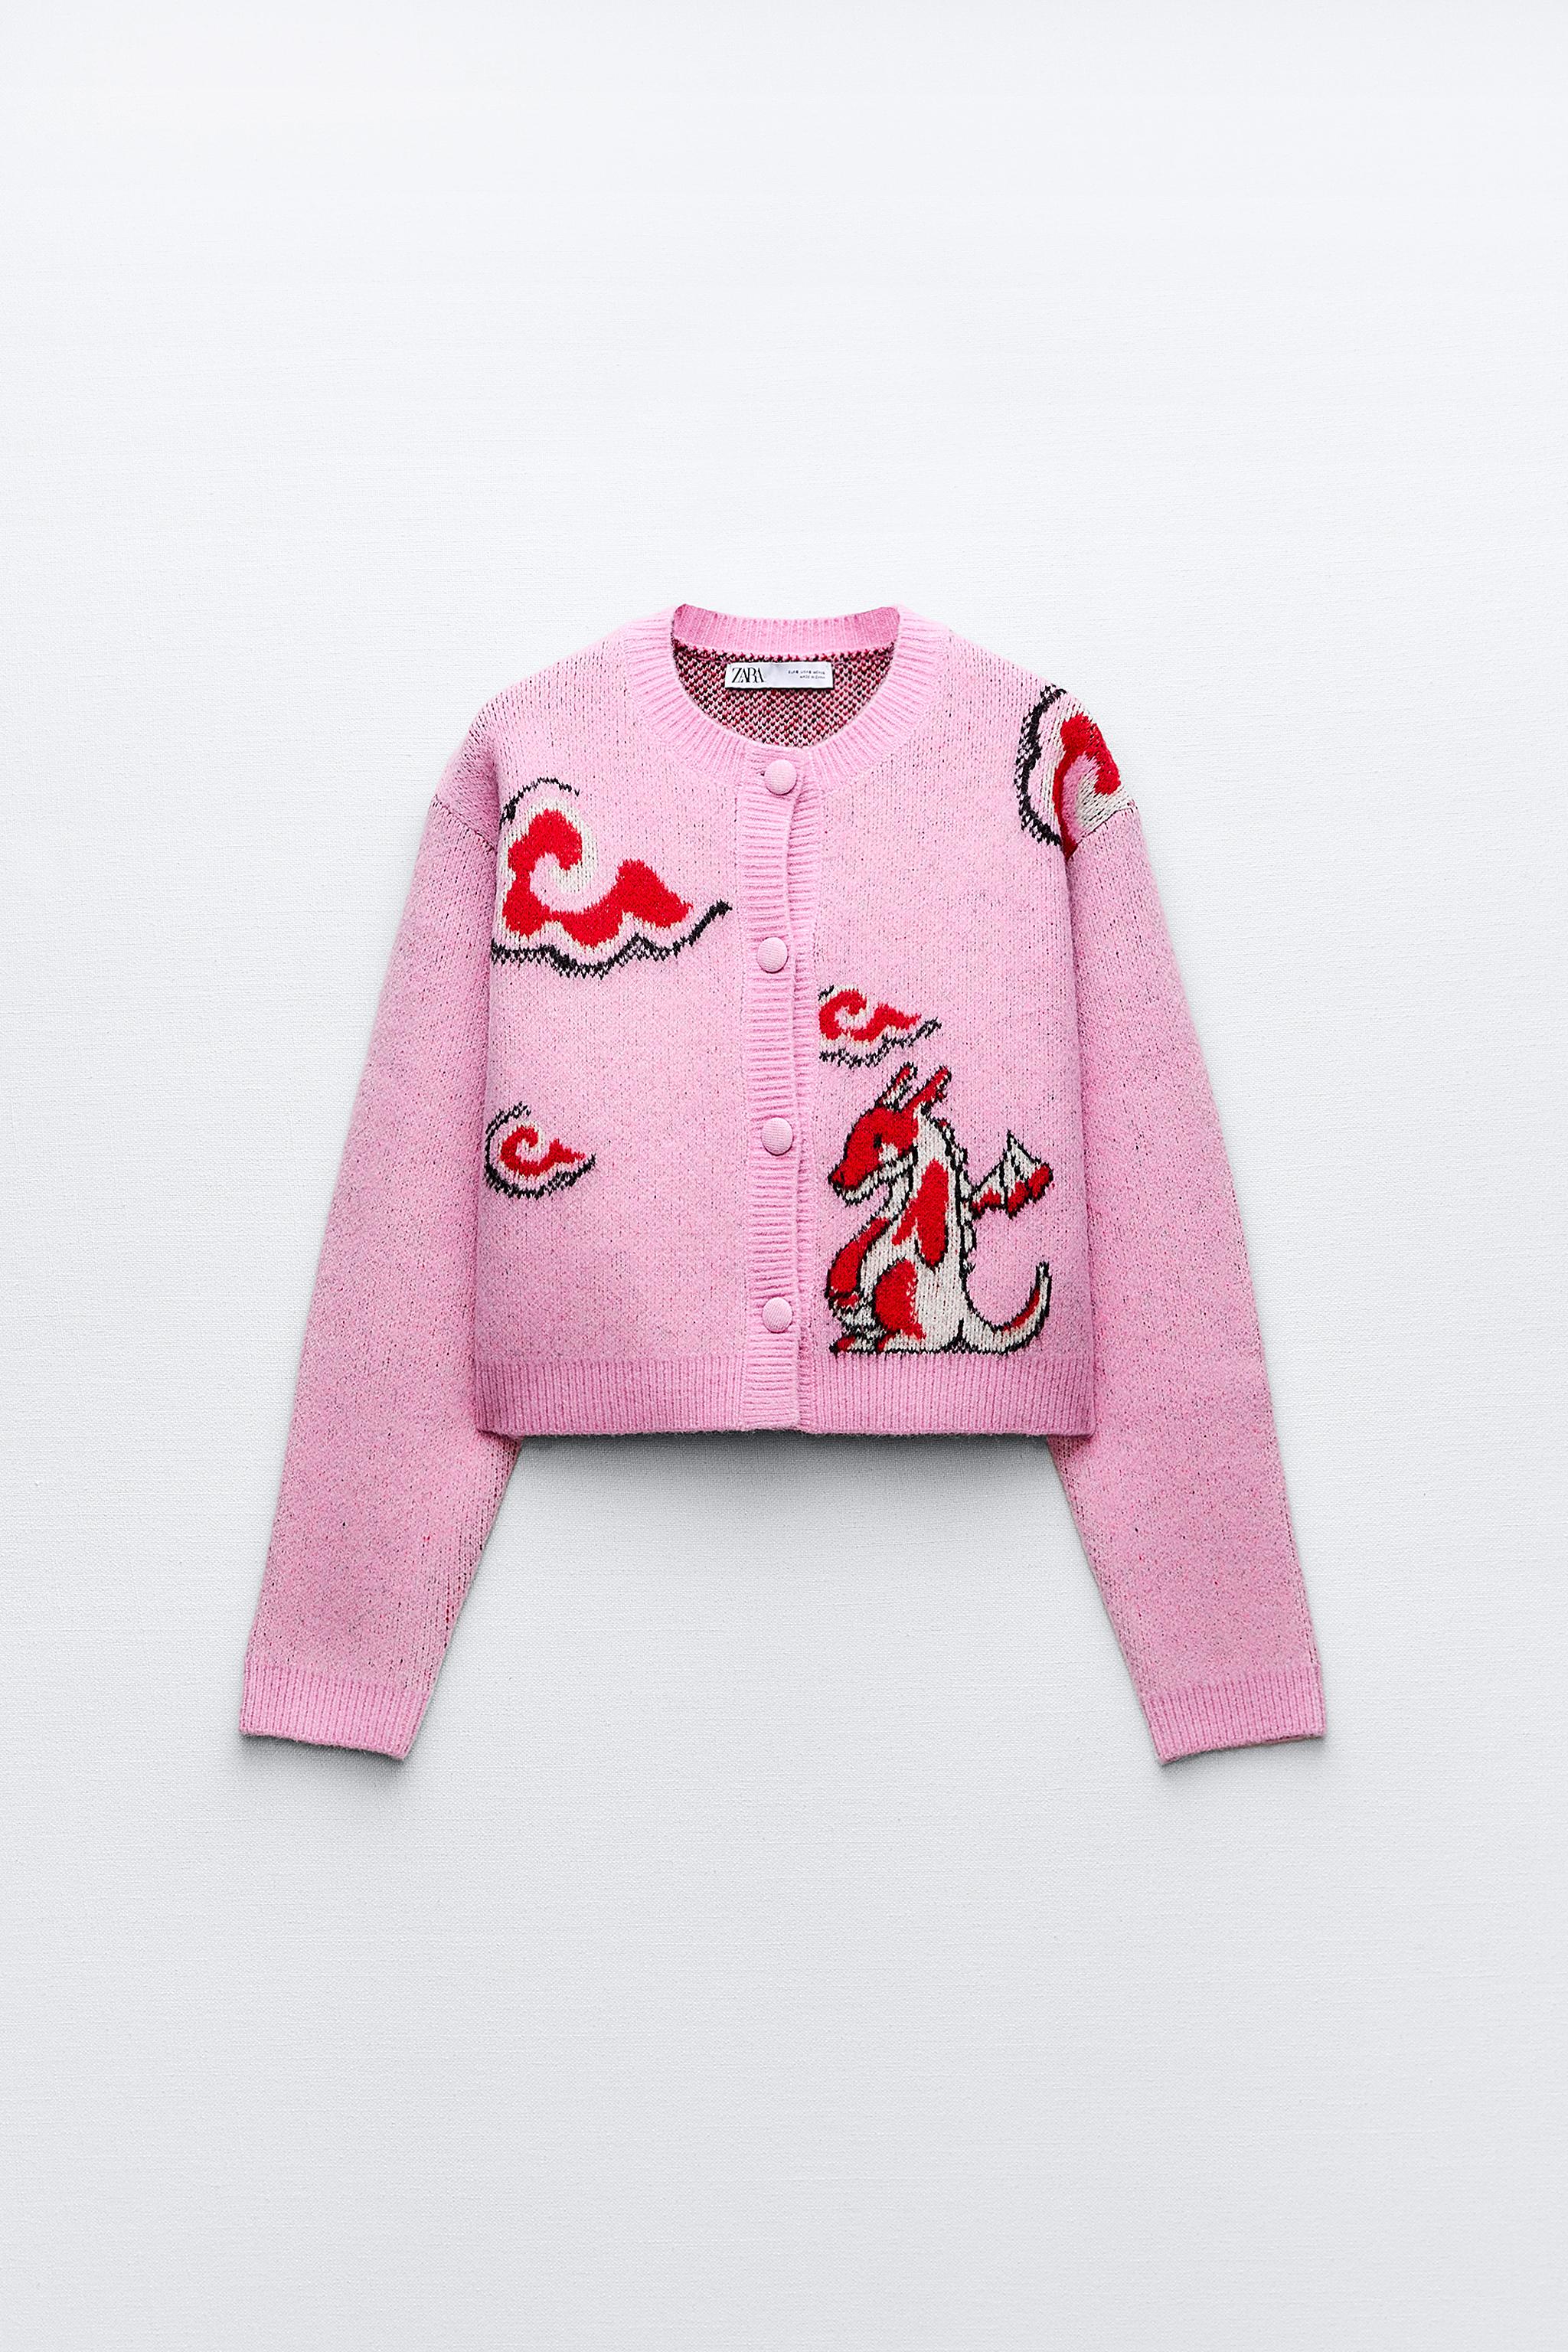 提花龍設計針織開襟衫- 粉紅色| ZARA Taiwan, China / 中國台灣